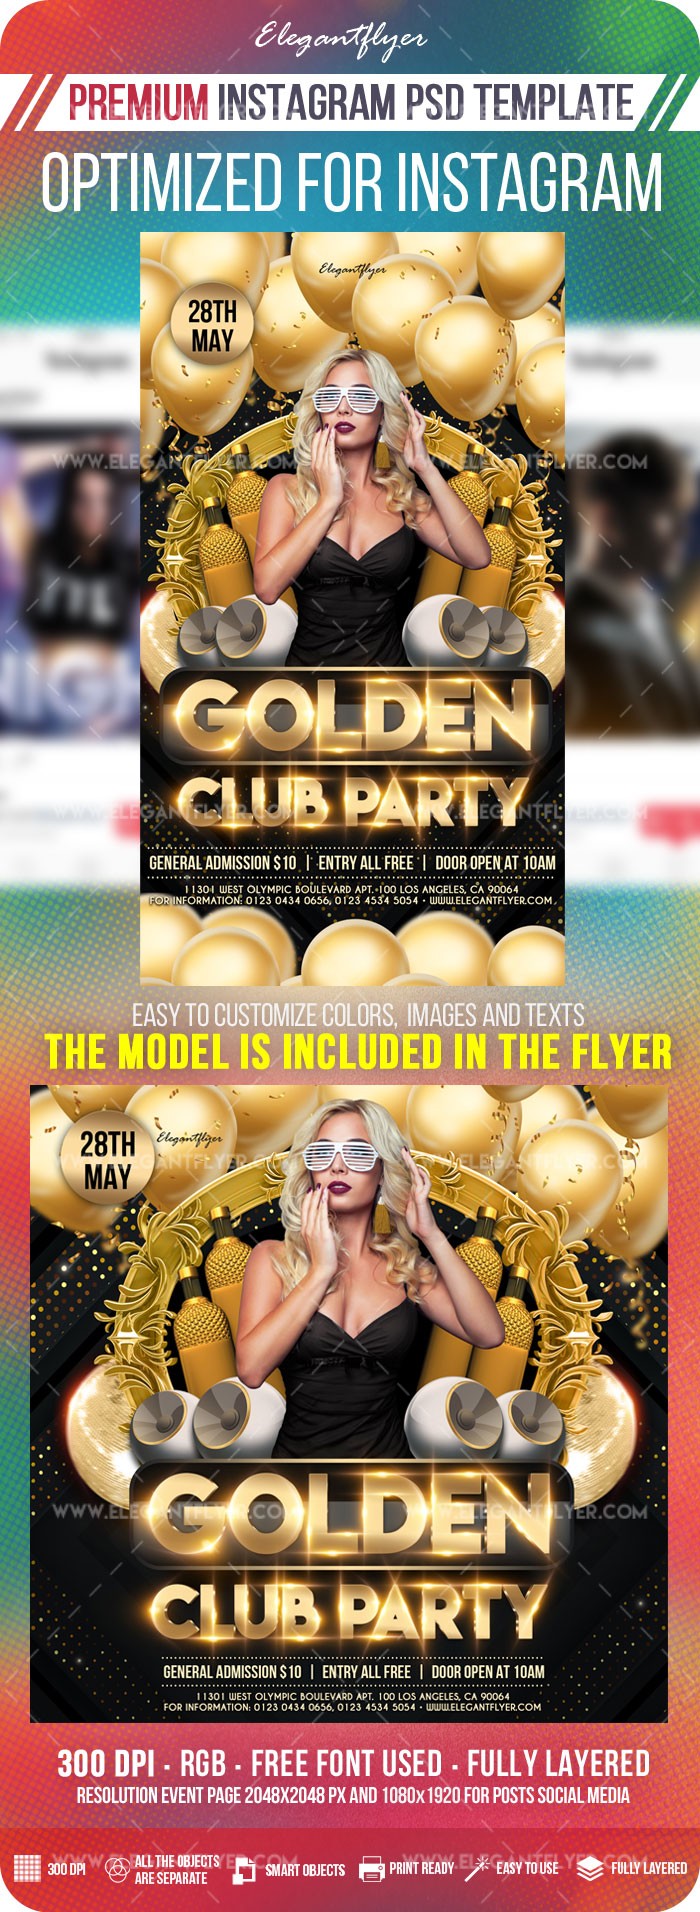 Złota klubowa impreza na Instagramie by ElegantFlyer